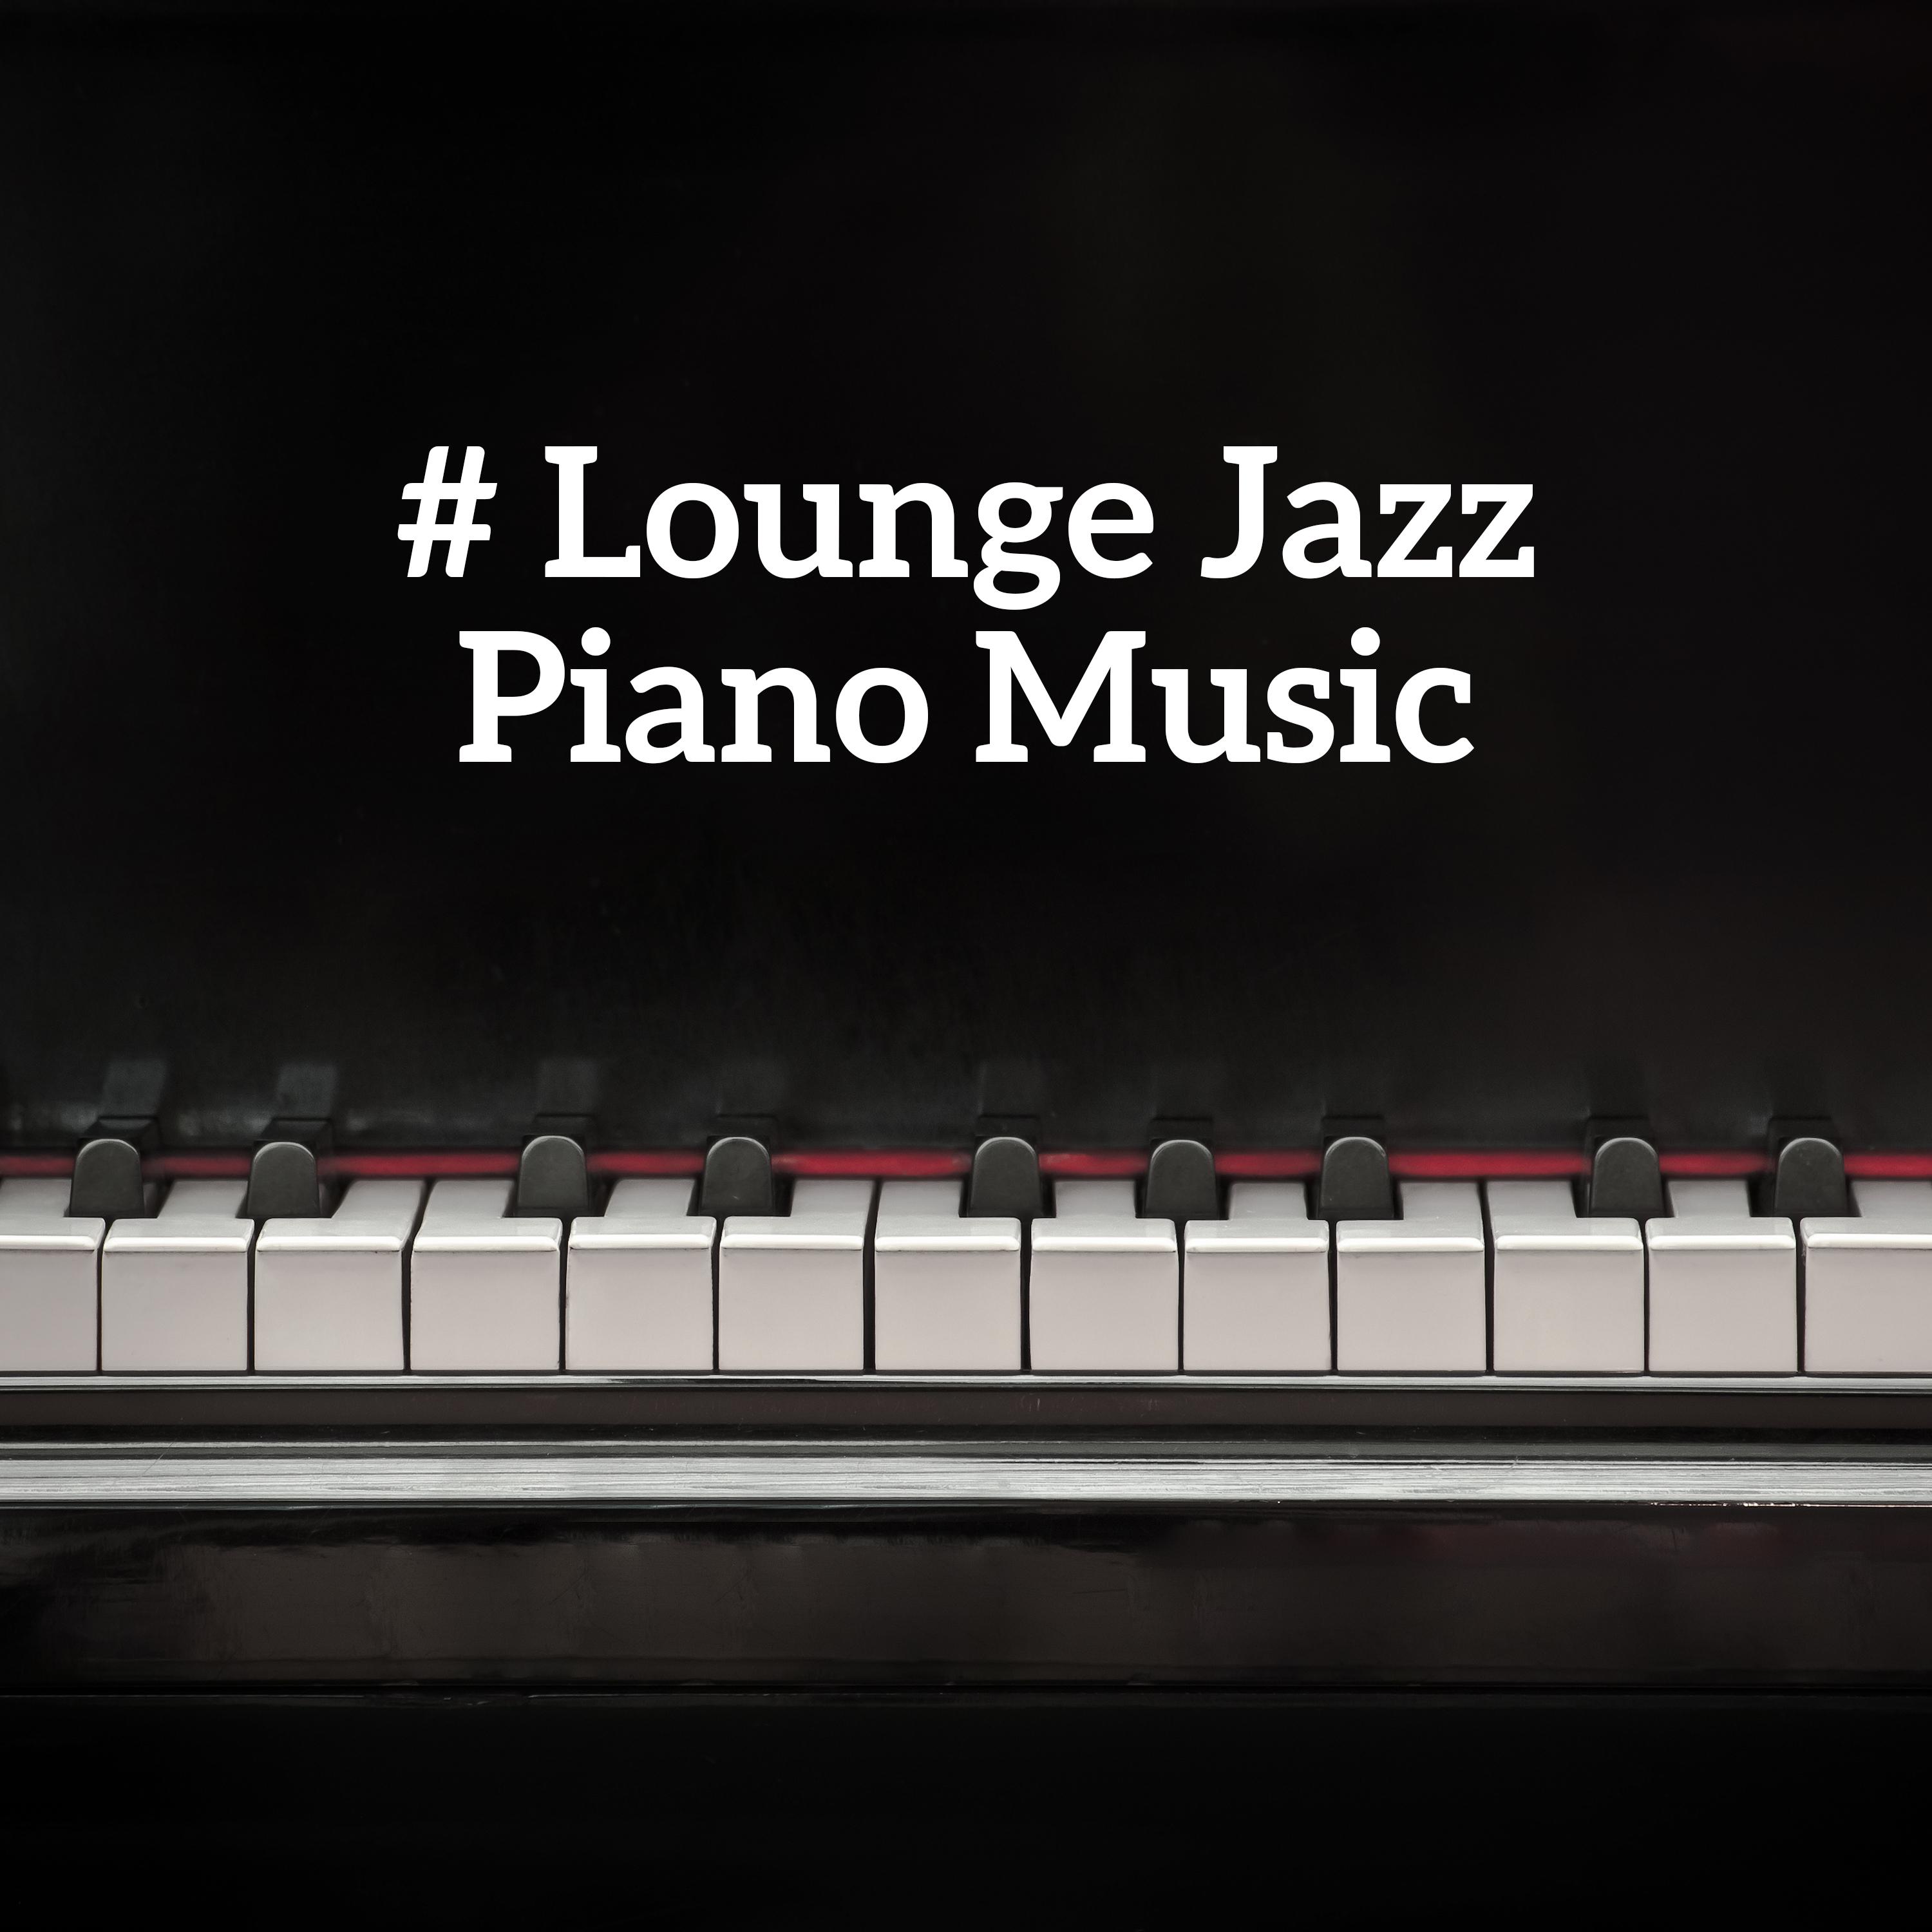 # Lounge Jazz Piano Music